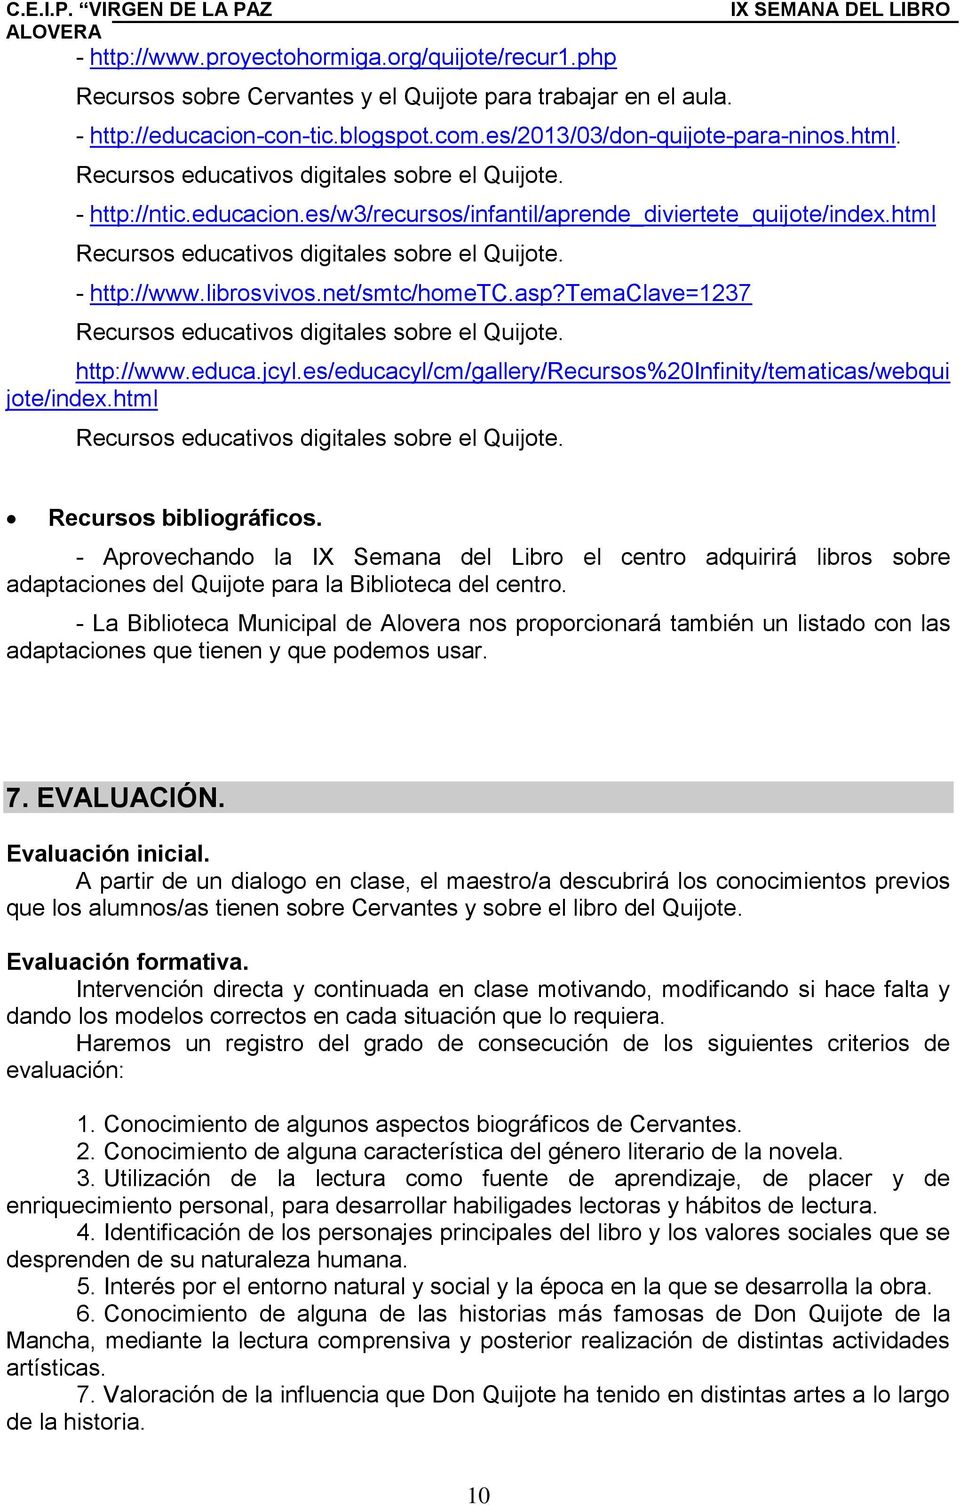 librosvivos.net/smtc/hometc.asp?temaclave=1237 Recursos educativos digitales sobre el Quijote. http://www.educa.jcyl.es/educacyl/cm/gallery/recursos%20infinity/tematicas/webqui jote/index.